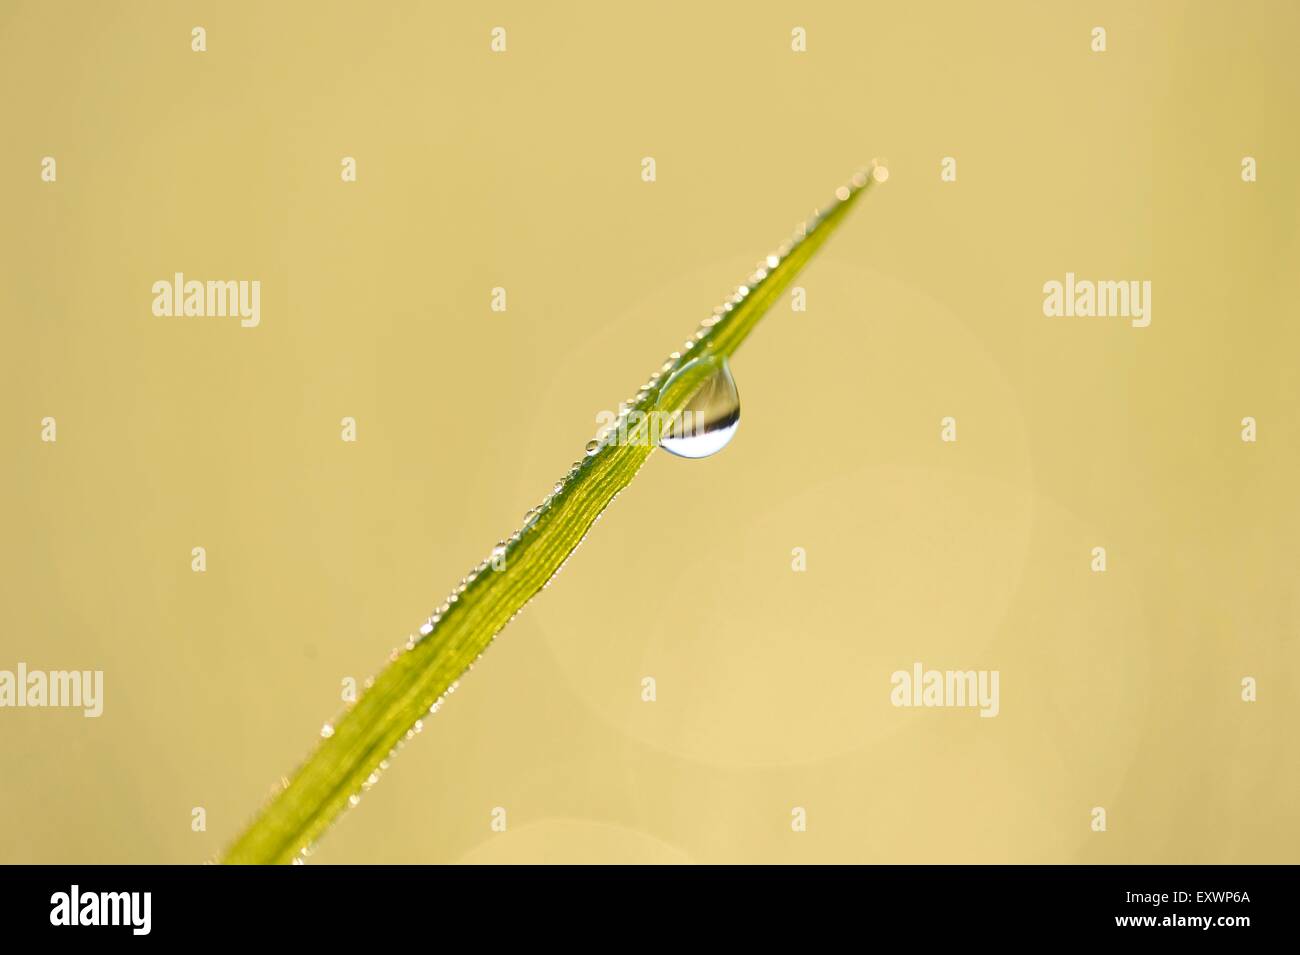 Dettaglio di una lama per erba con waterdrop Foto Stock